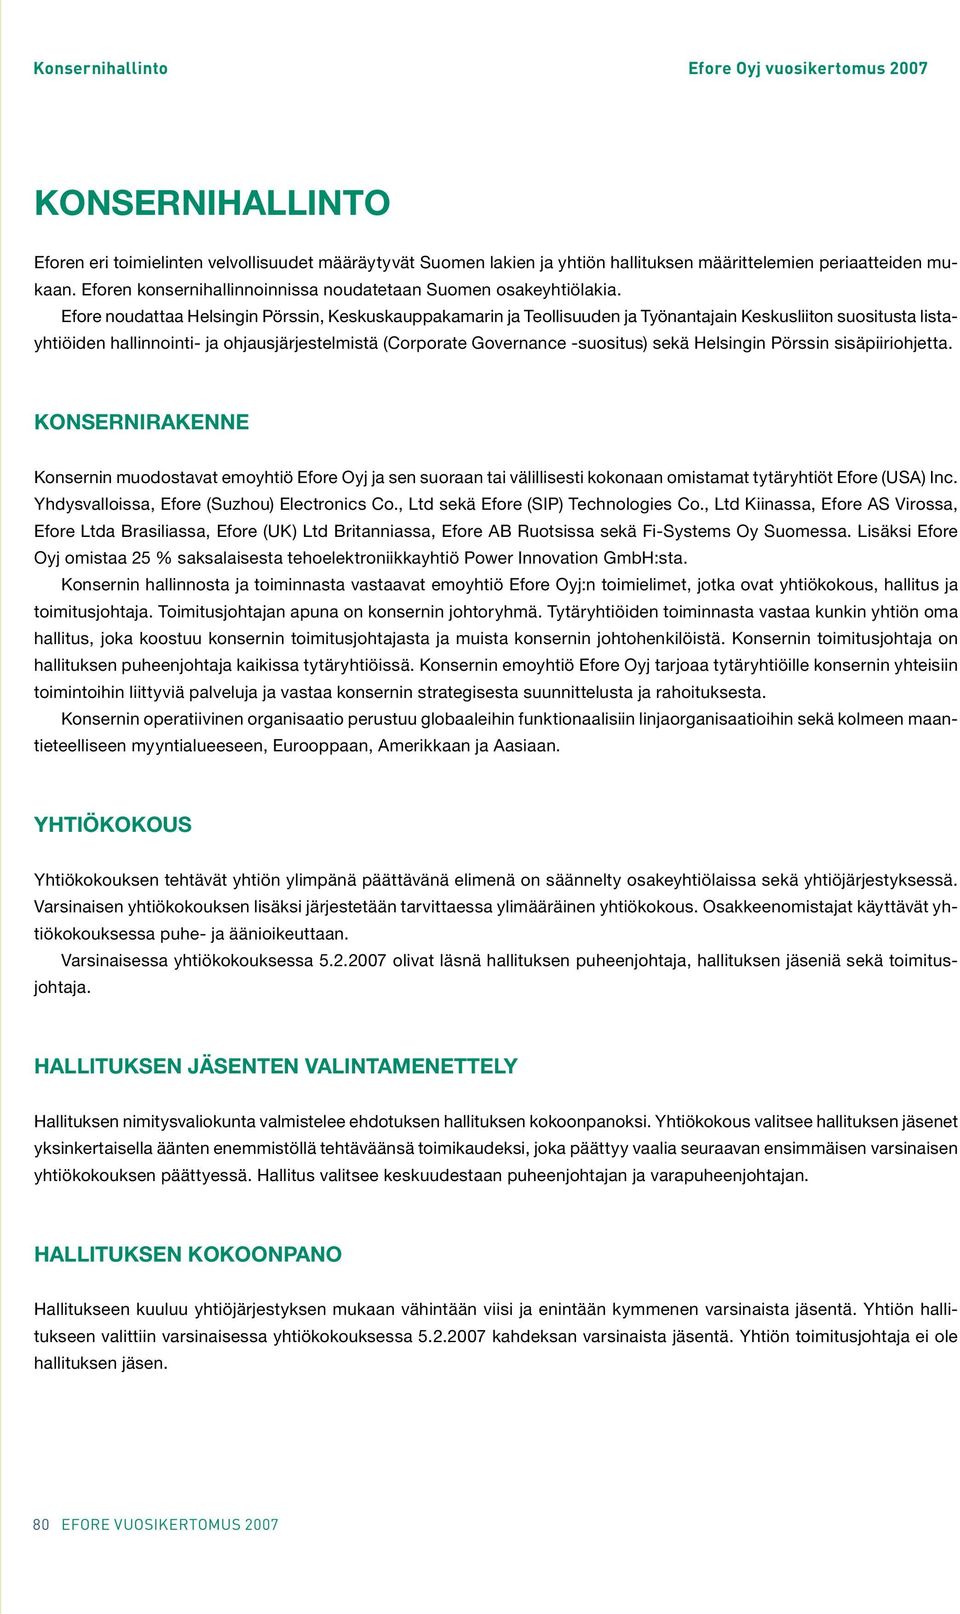 Efore noudattaa Helsingin Pörssin, Keskuskauppakamarin ja Teollisuuden ja Työnantajain Keskusliiton suositusta listayhtiöiden hallinnointi- ja ohjausjärjestelmistä (Corporate Governance -suositus)